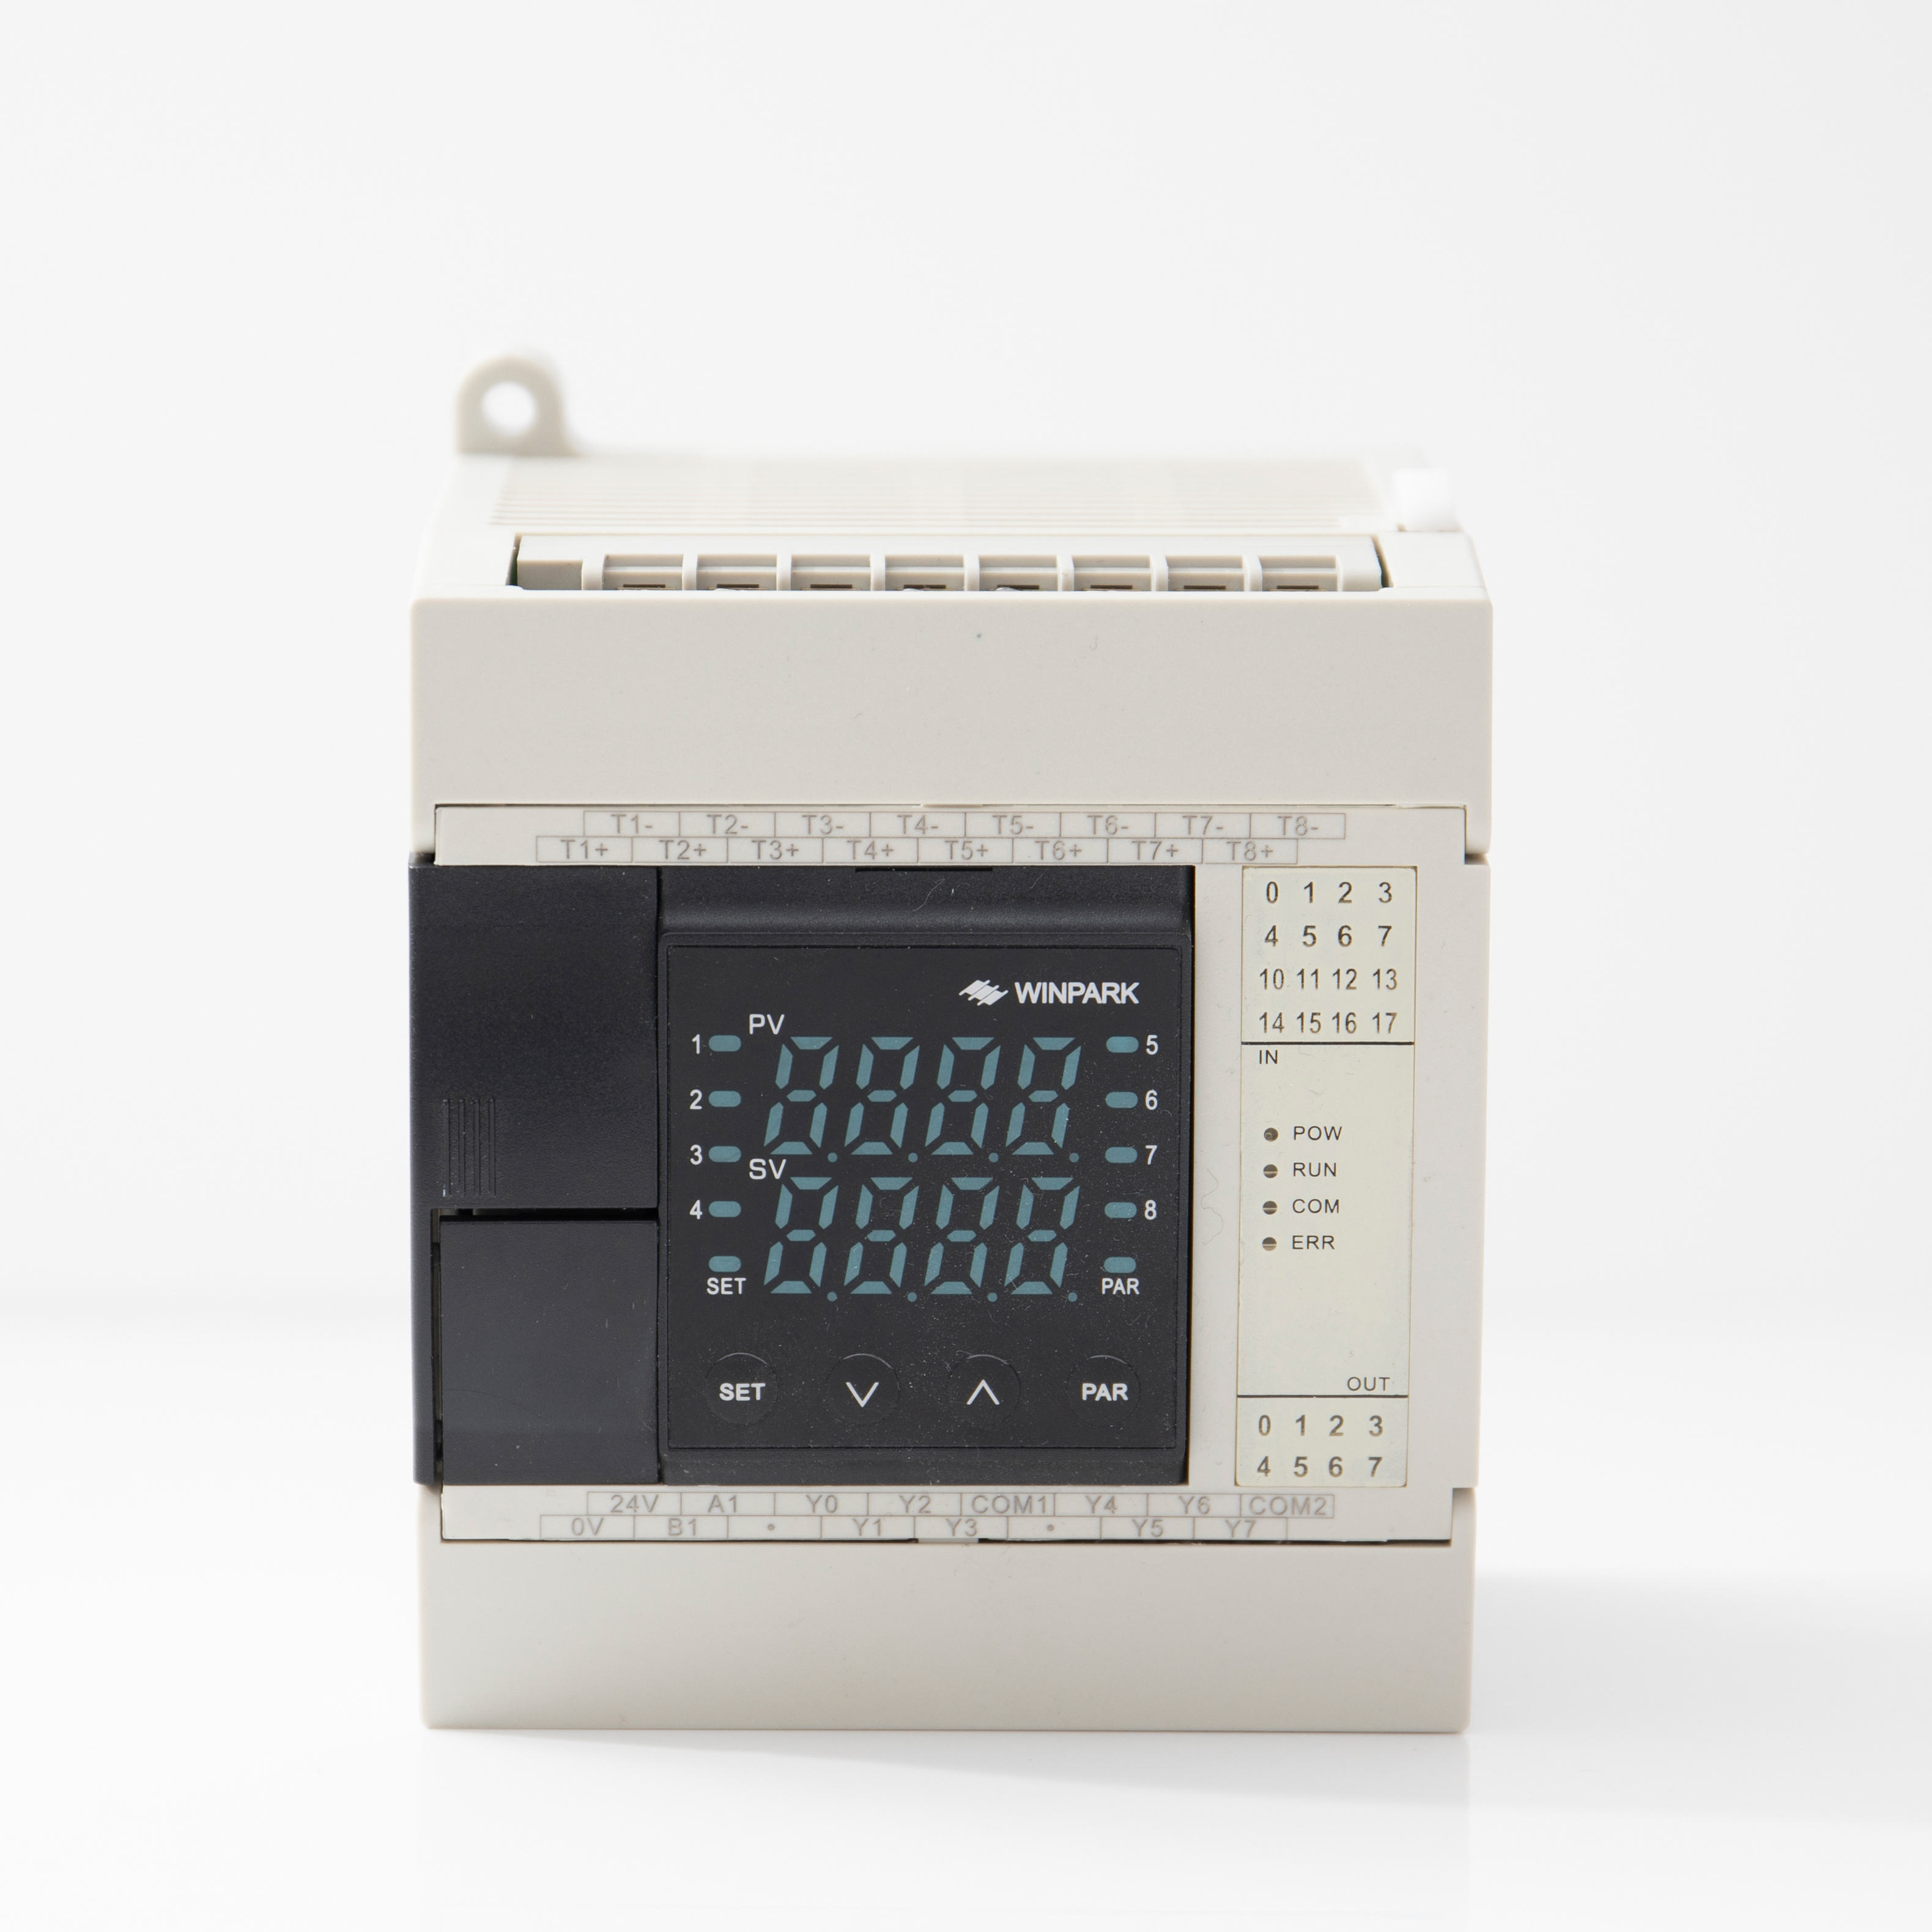 HPE series Multi-Channel Temperature Control Module